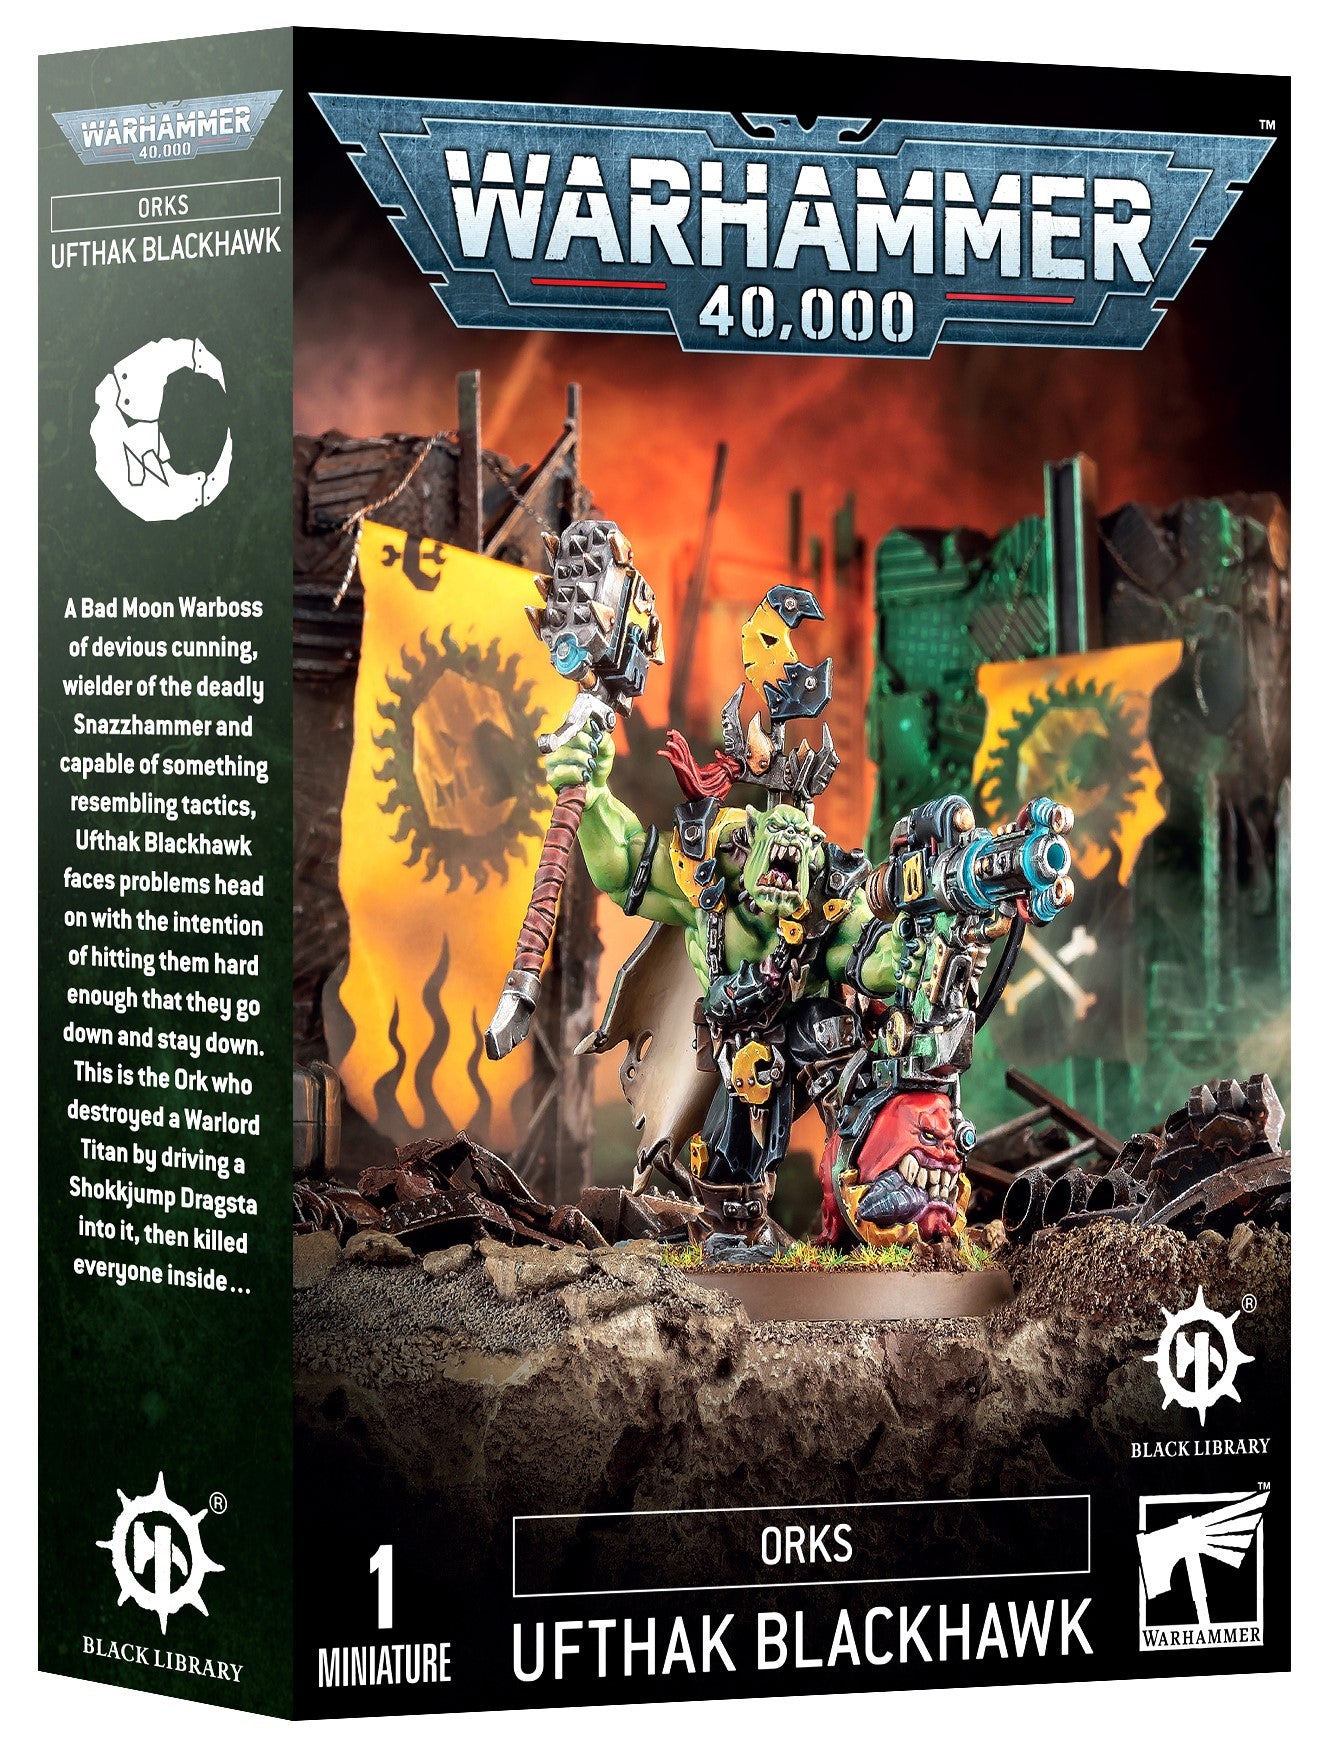 Orks Ufthak Blackhawk Warhammer 40K Black Library OOP WBGames